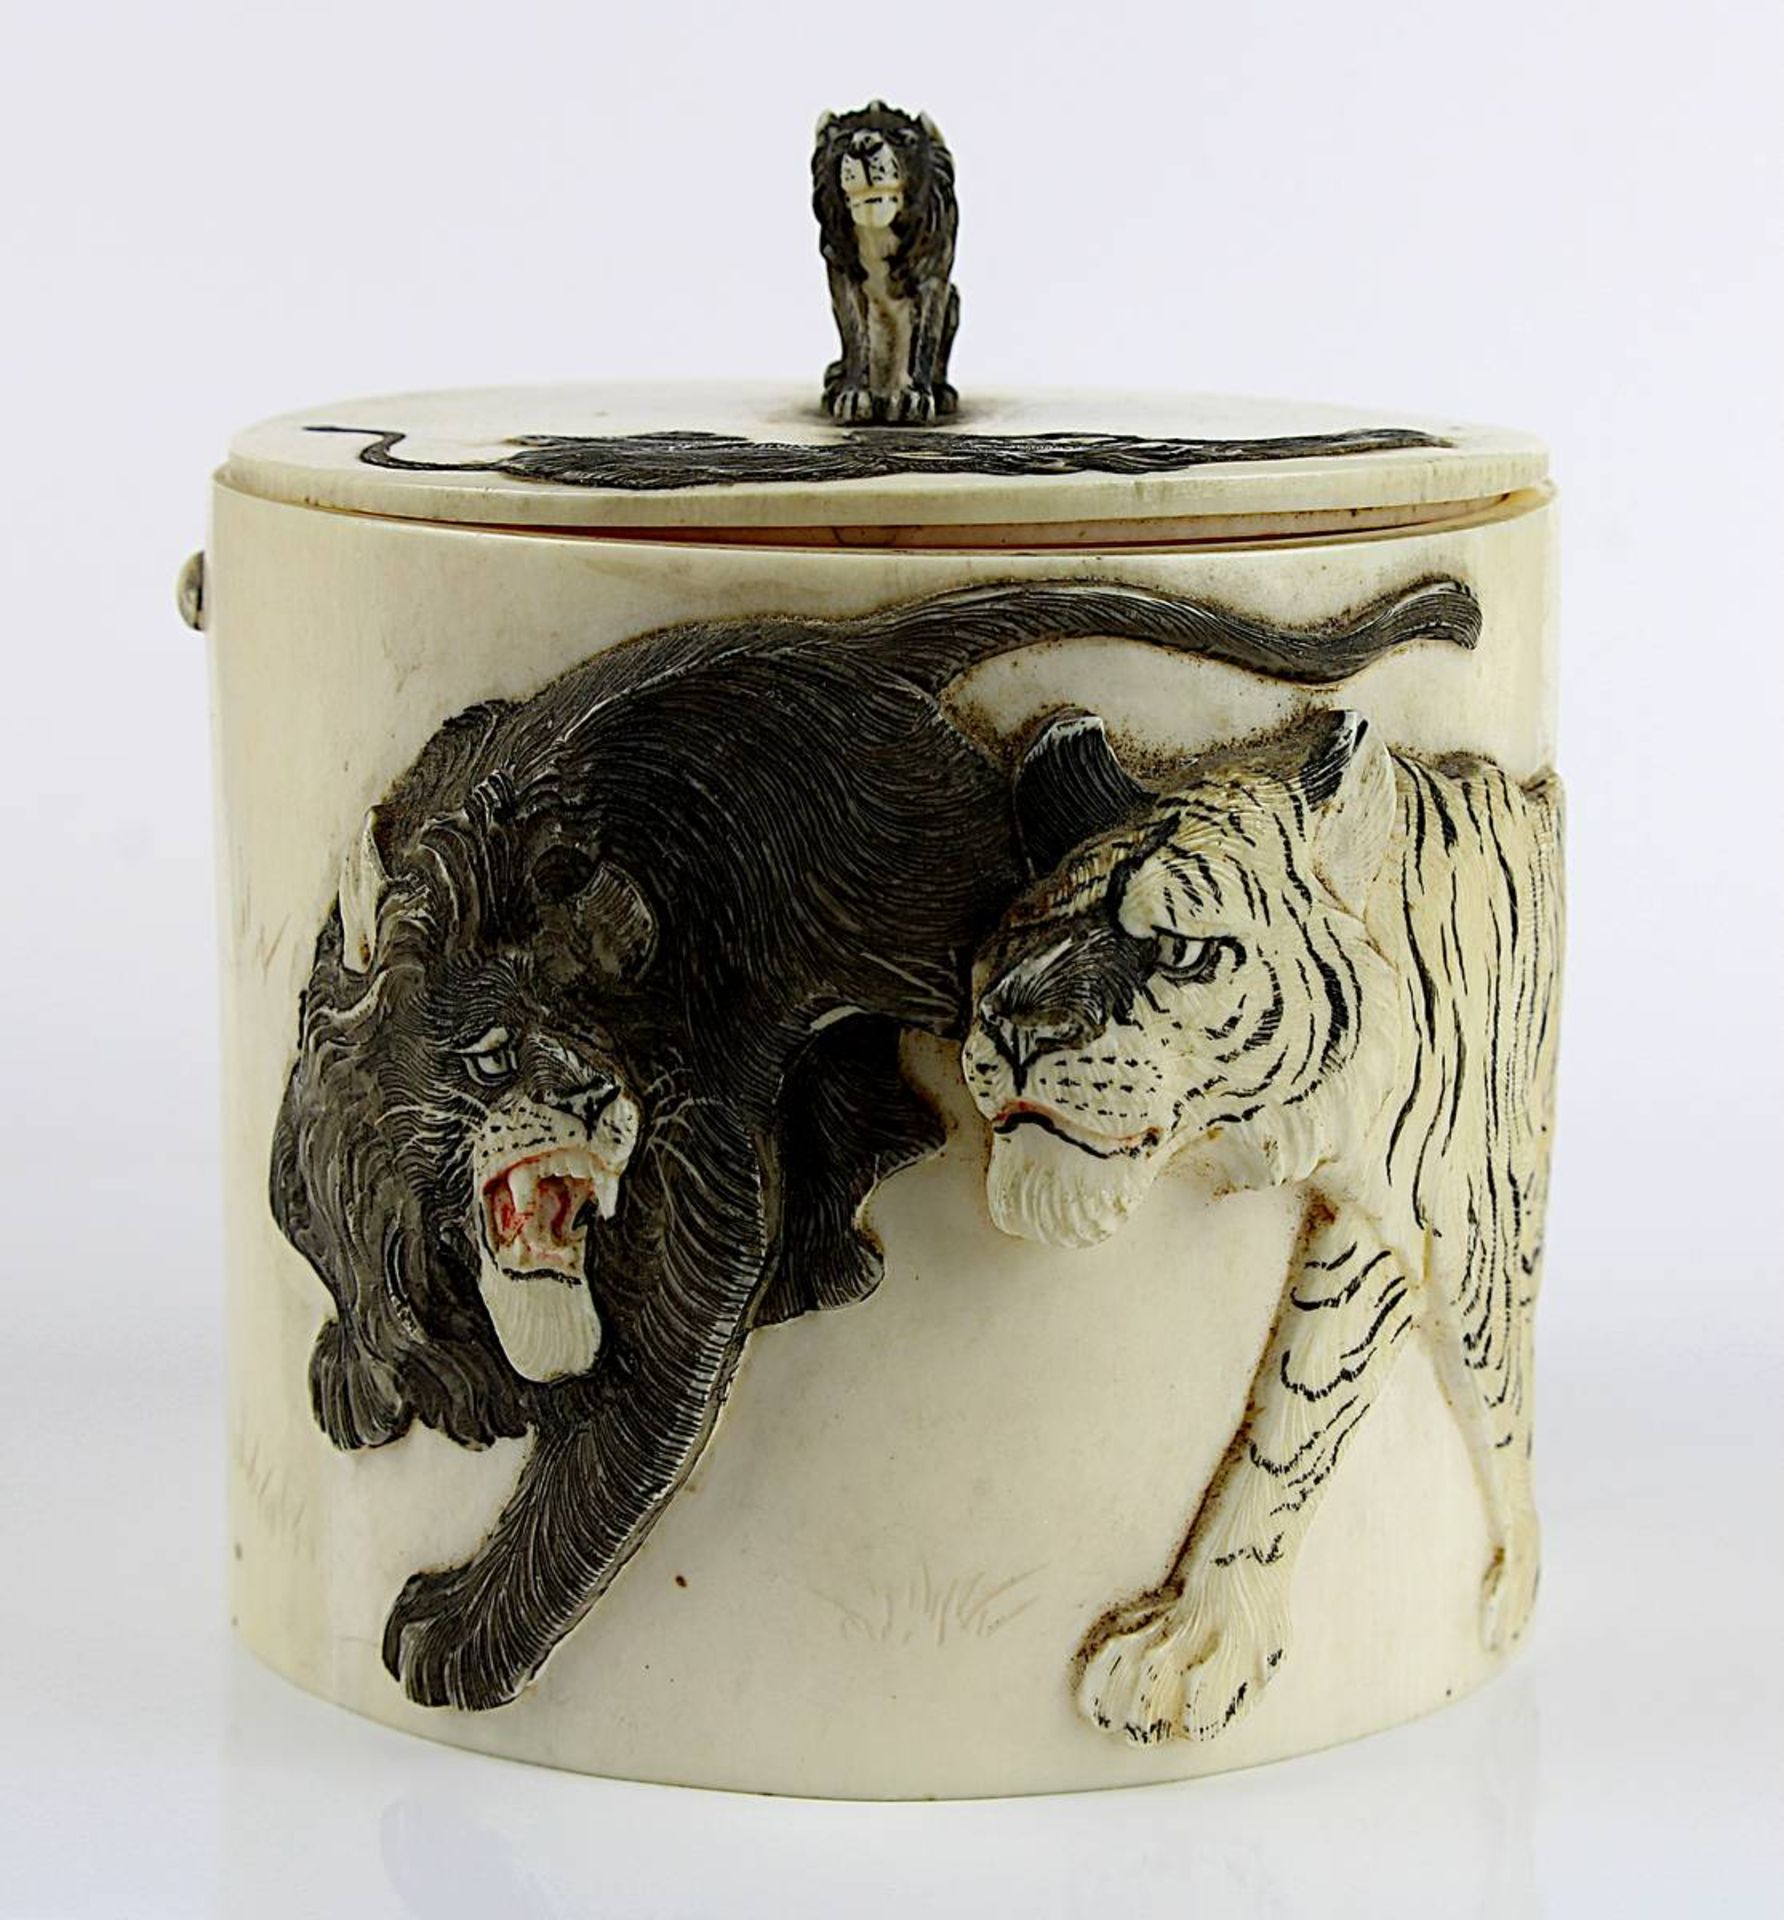 Japanische Elfenbein-Dose mit Tigermotiven, späte Edo-Zeit, zylindrische Form, Deckel und Wandung - Image 3 of 7